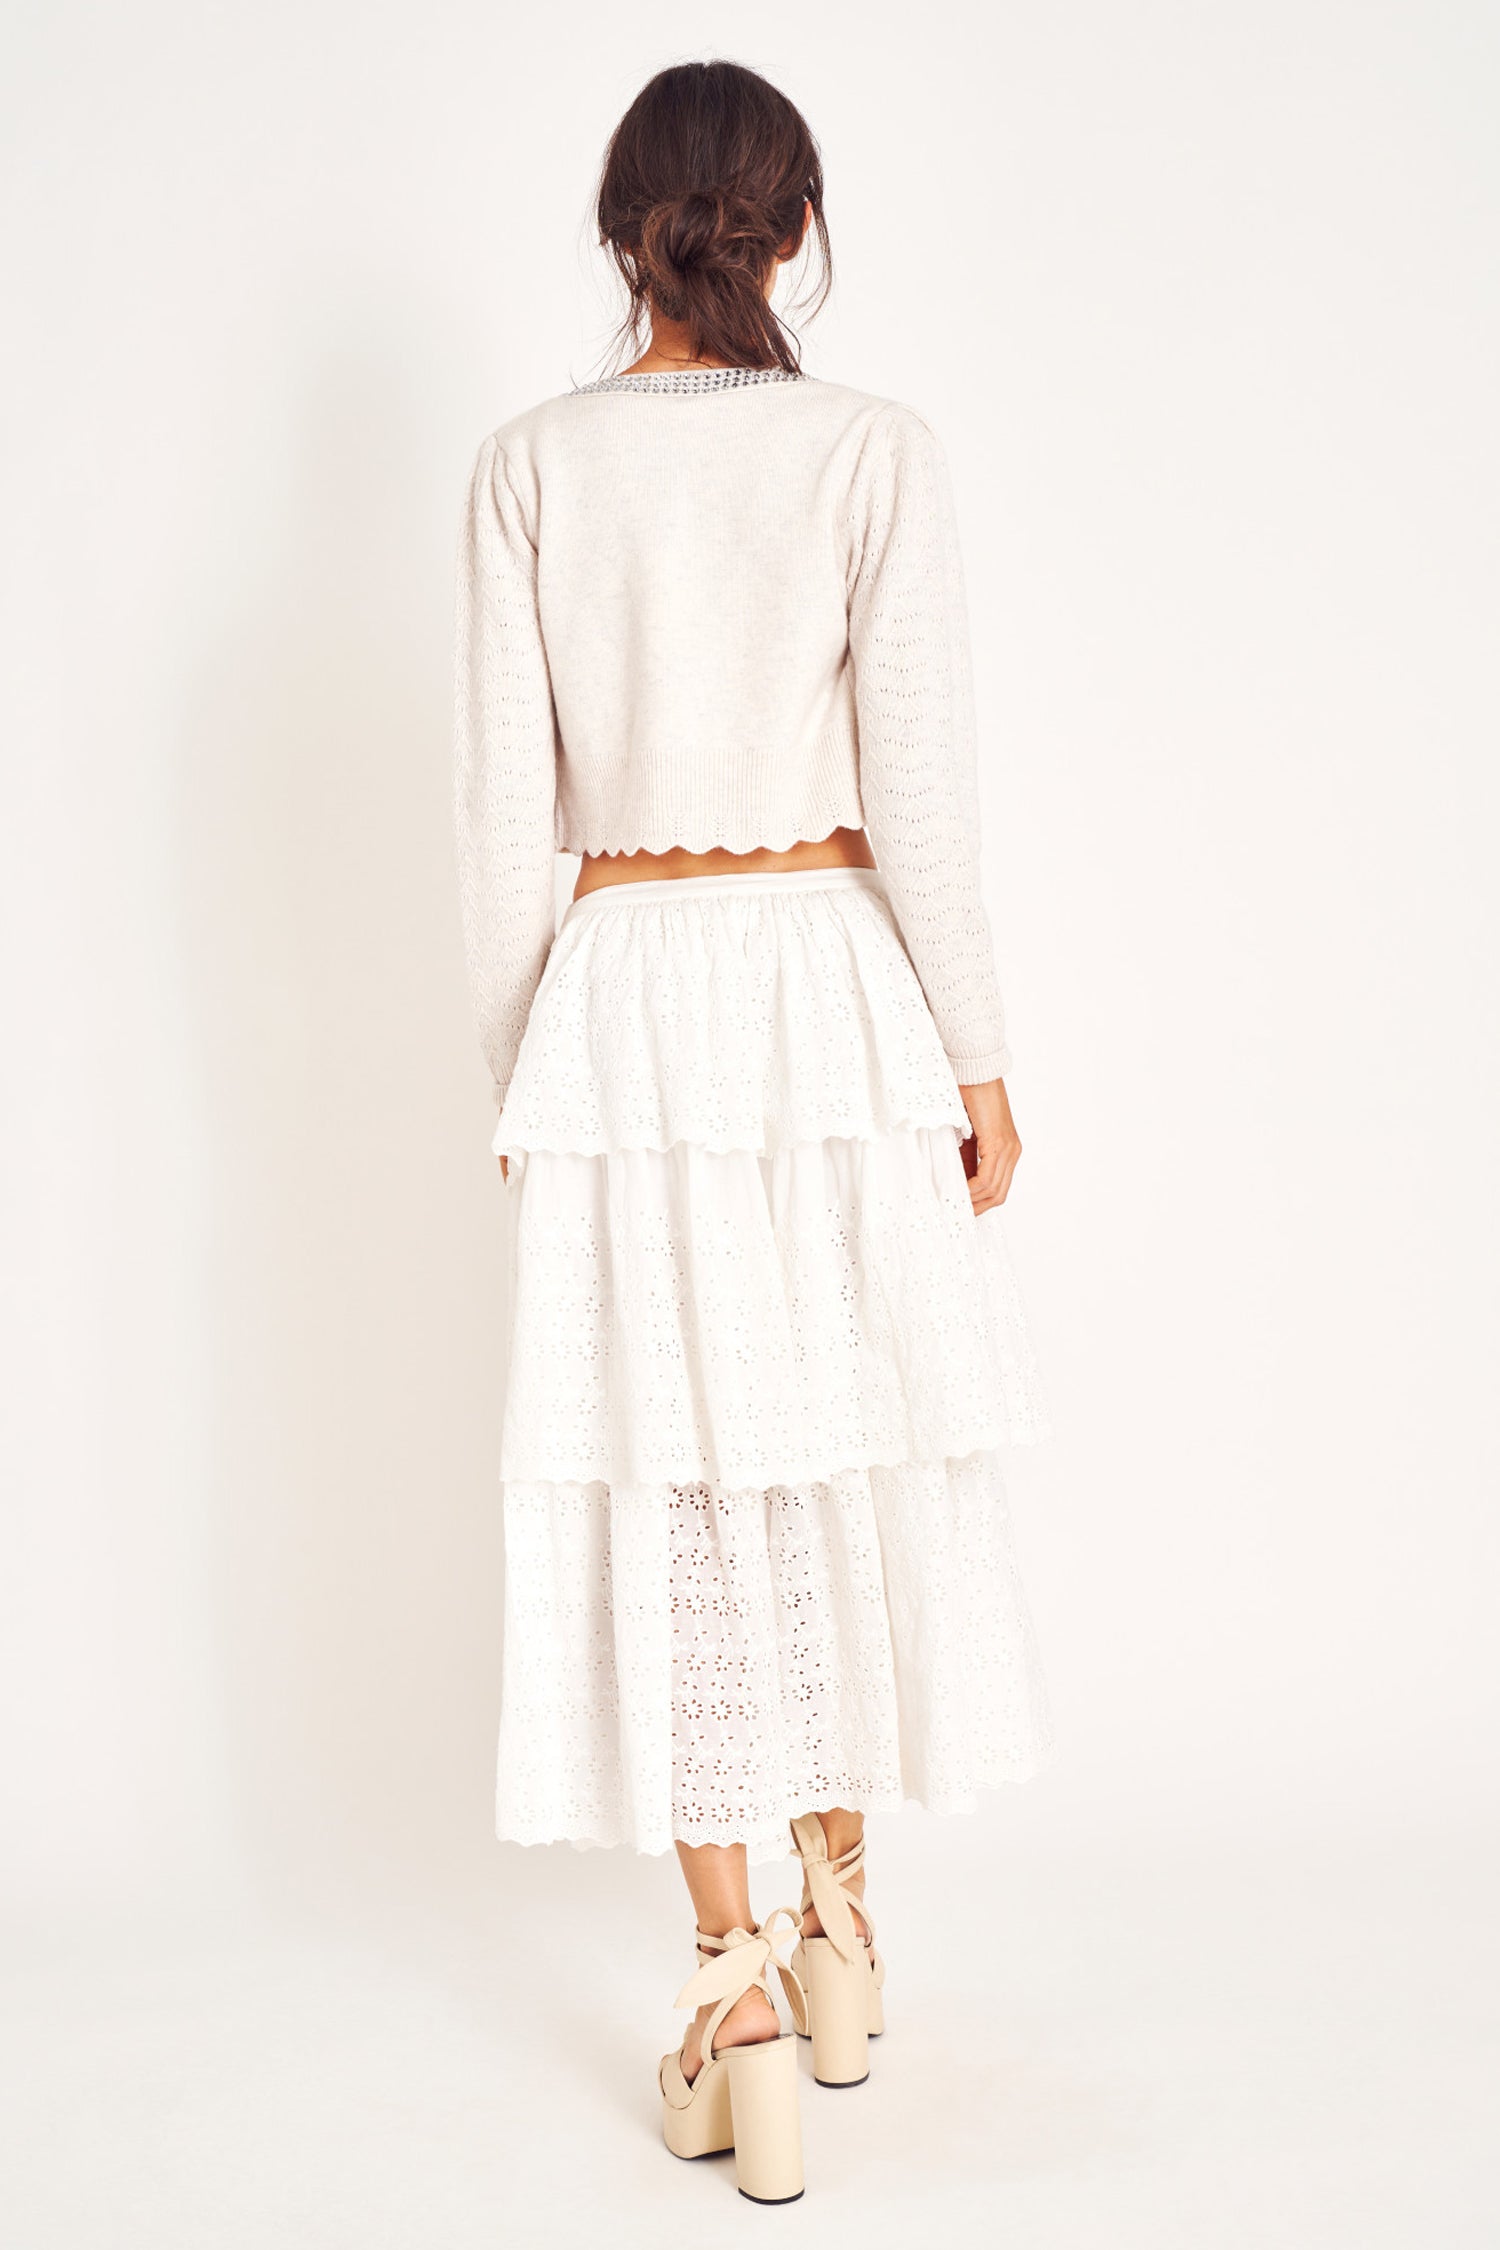 White ruffle lace midi skirt.